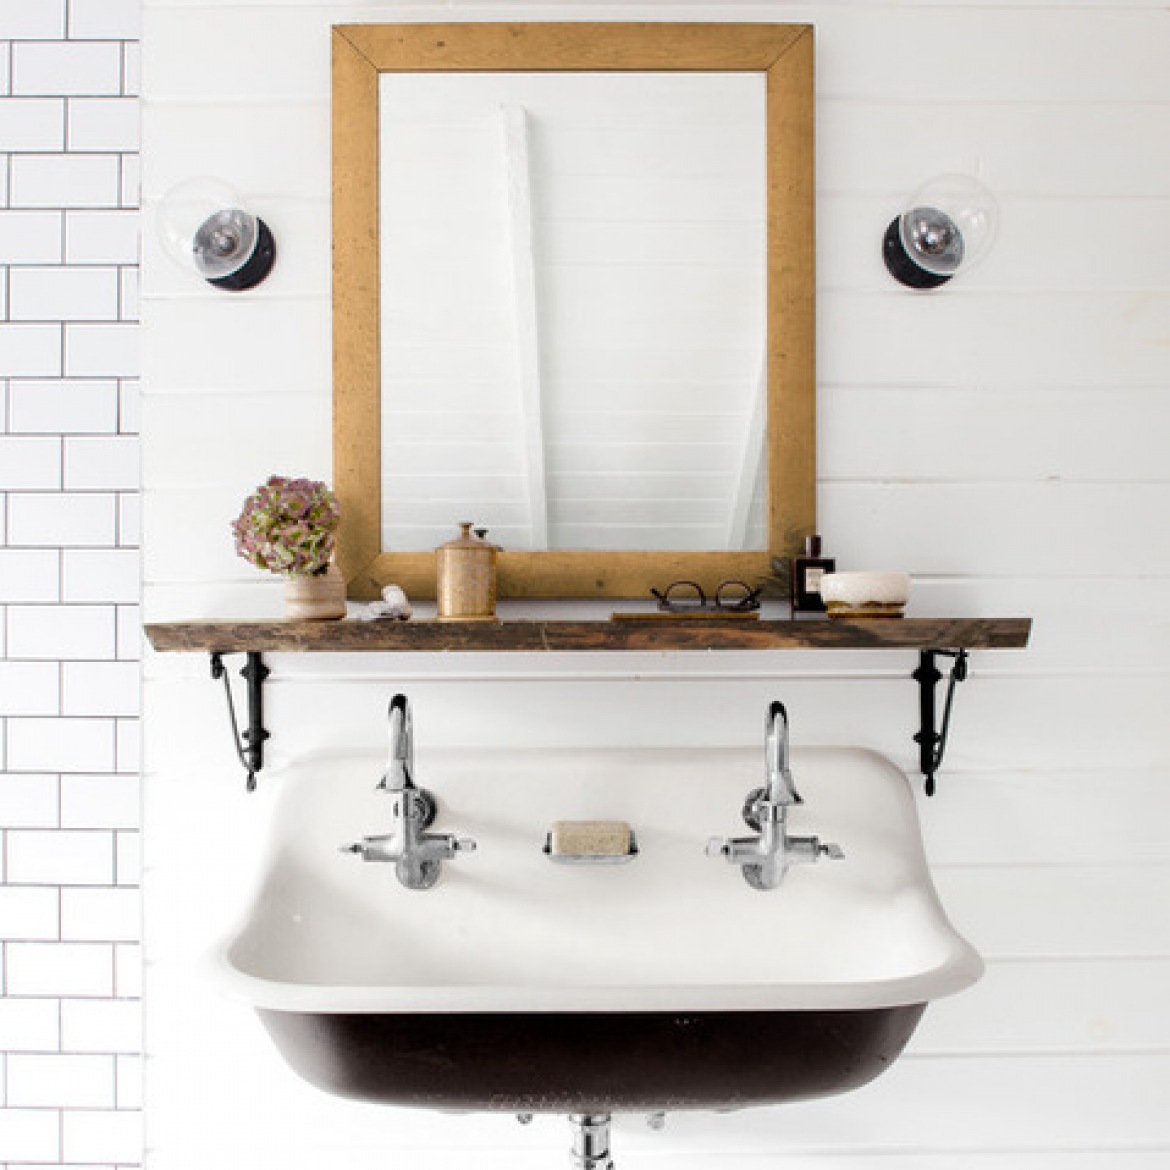 Drewniane lustro i półka na metalowych podporach w białej rustykalnej łazience (21301)